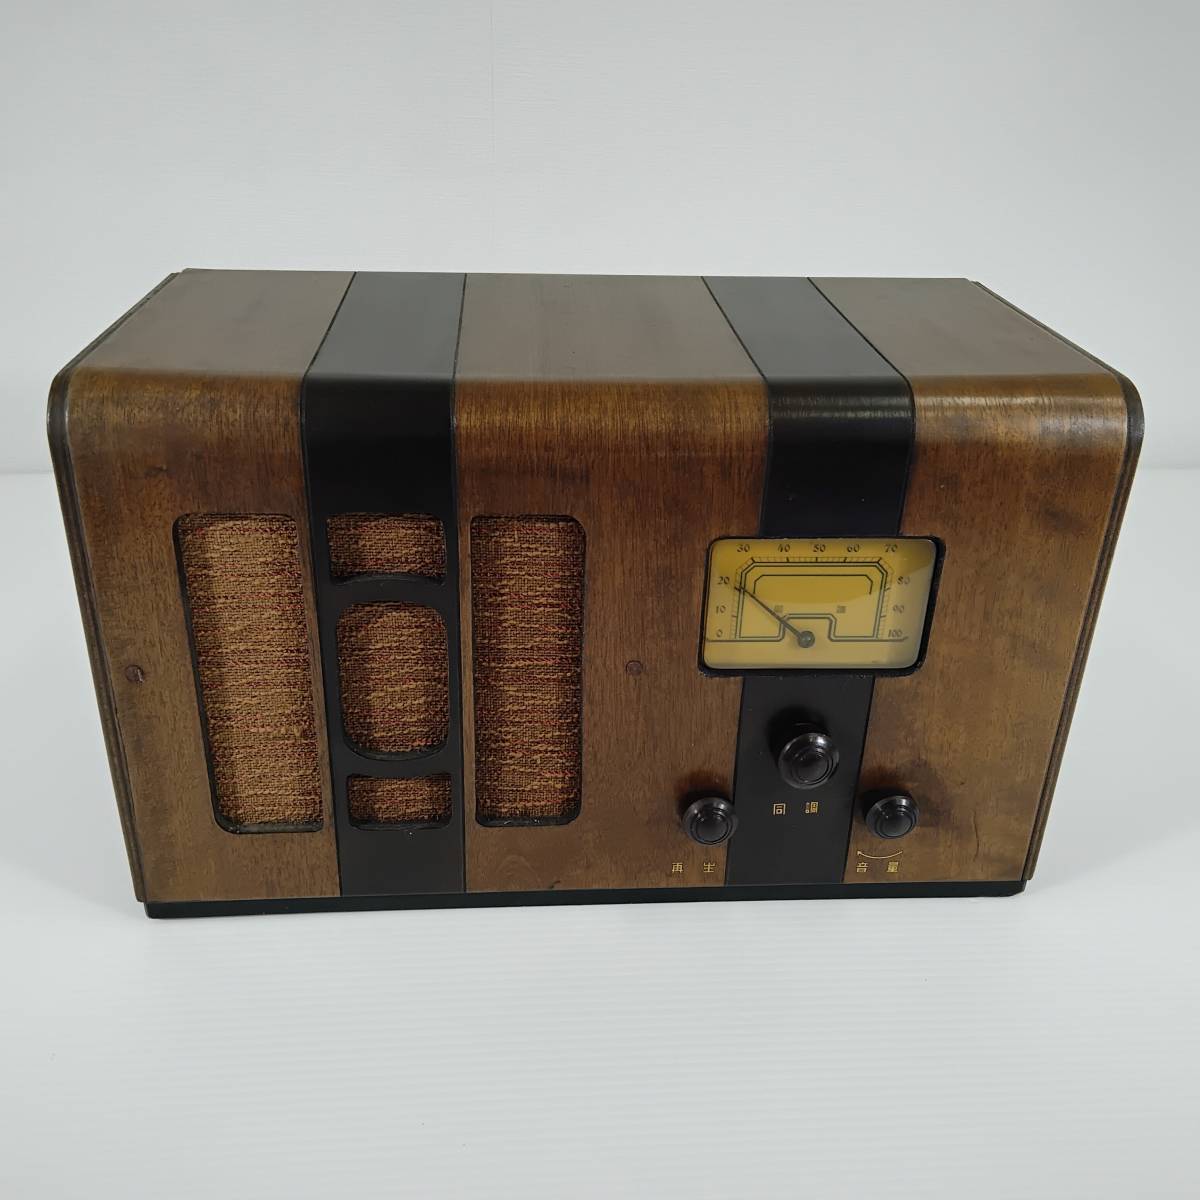 放送局型第百二十三号受信機 木製 真空管ラジオ ジャンク 昭和レトロ